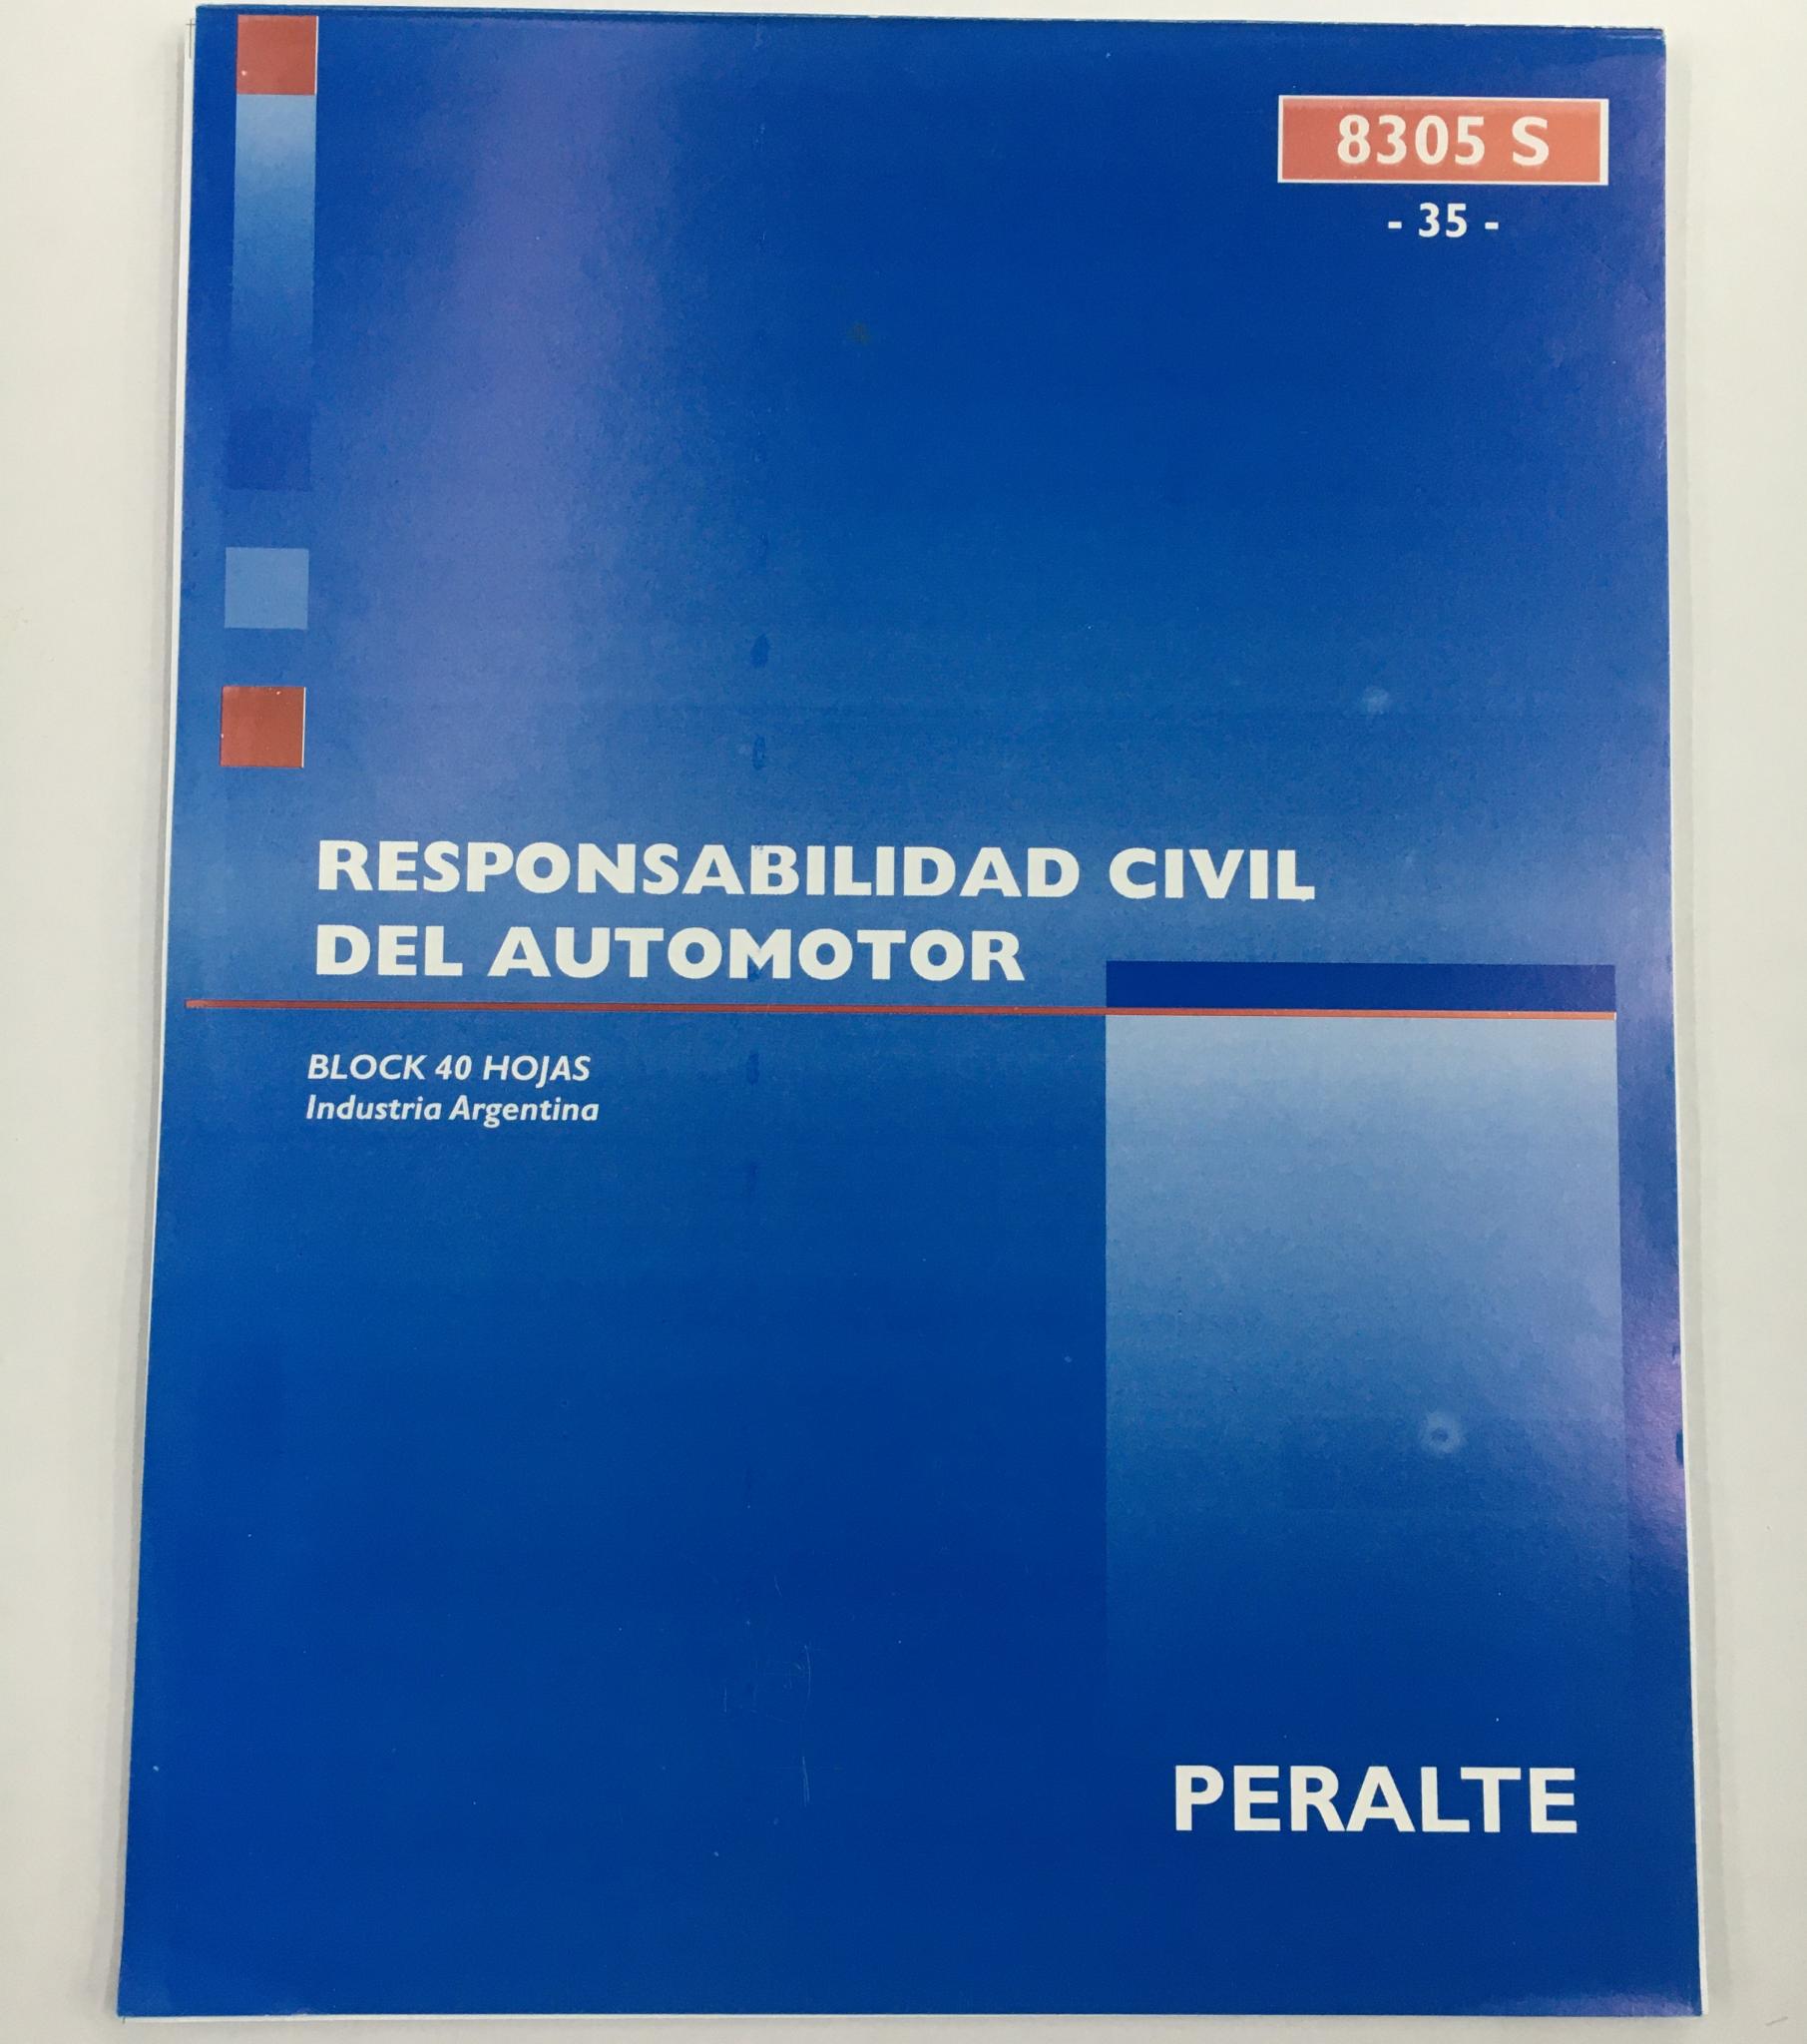 TALONARIO PERALTE RESPONSABILIDAD CIVIL AUTOMOTOR CARTA 8305S(35)